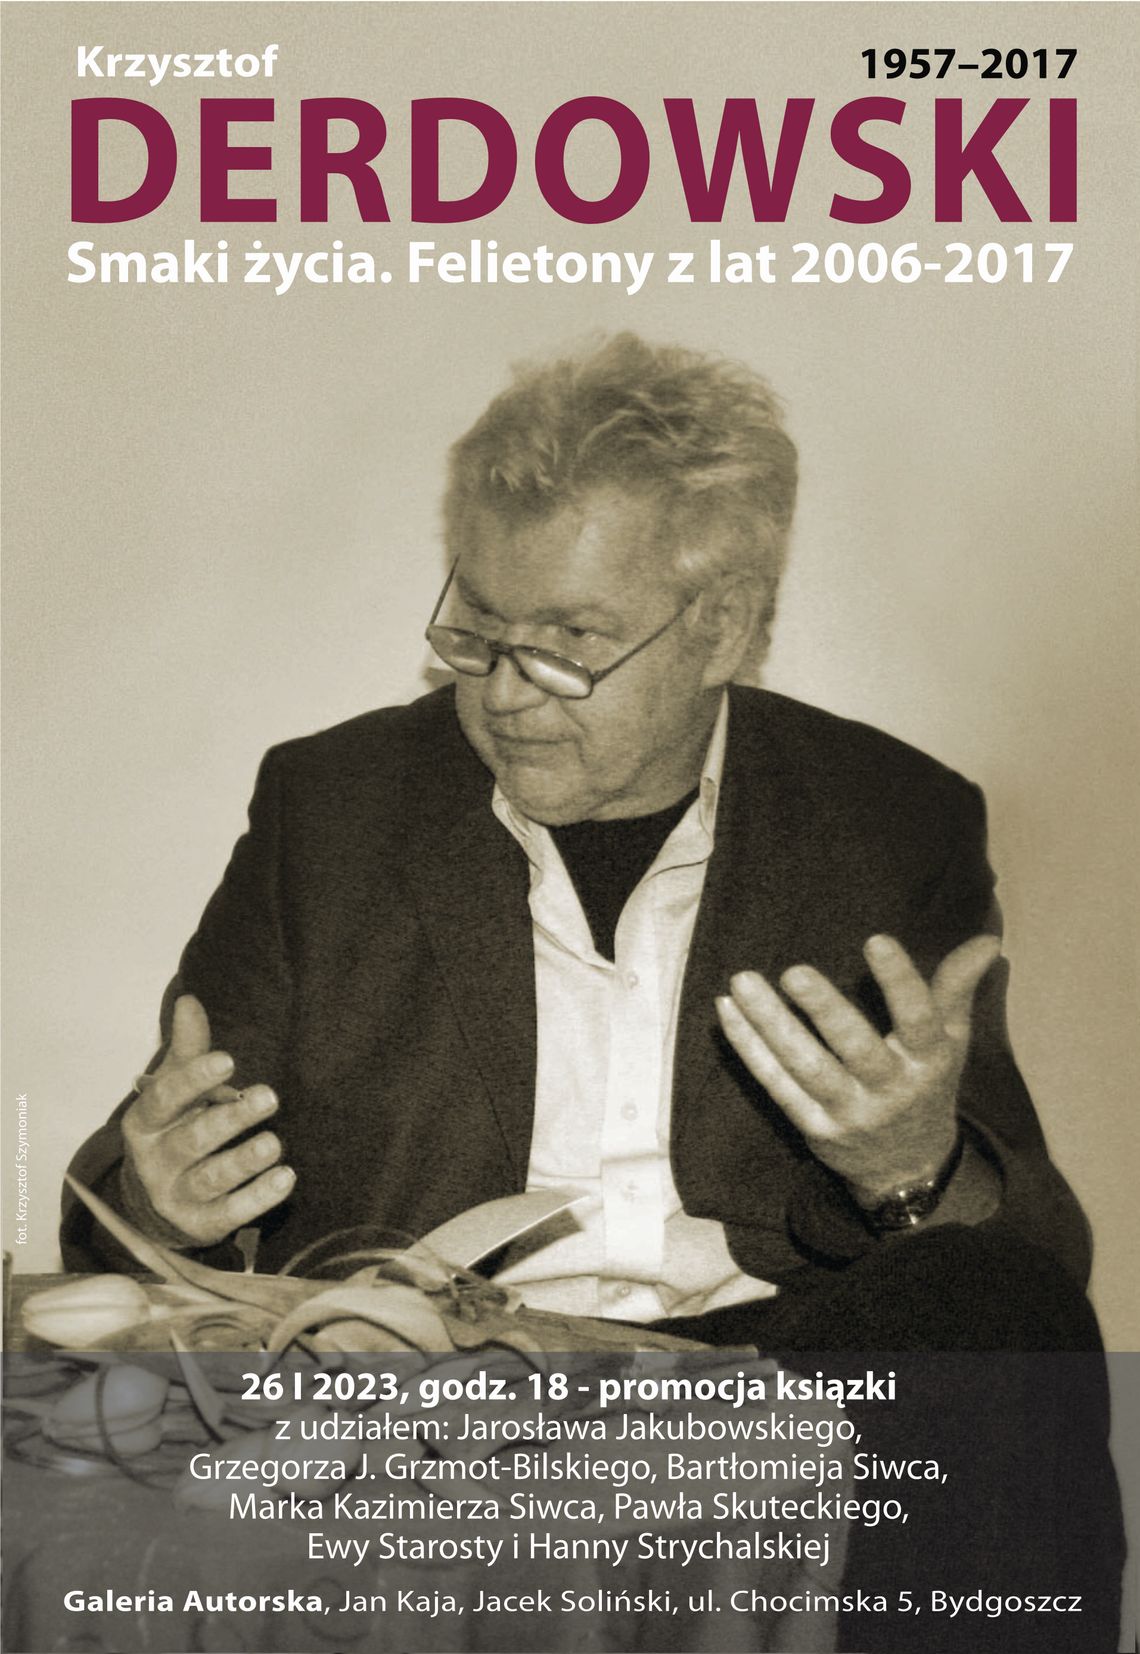 Promocja książki Krzysztofa Derdowskiego pt. "Smaki życia. Felietony z lat 2006-2017"